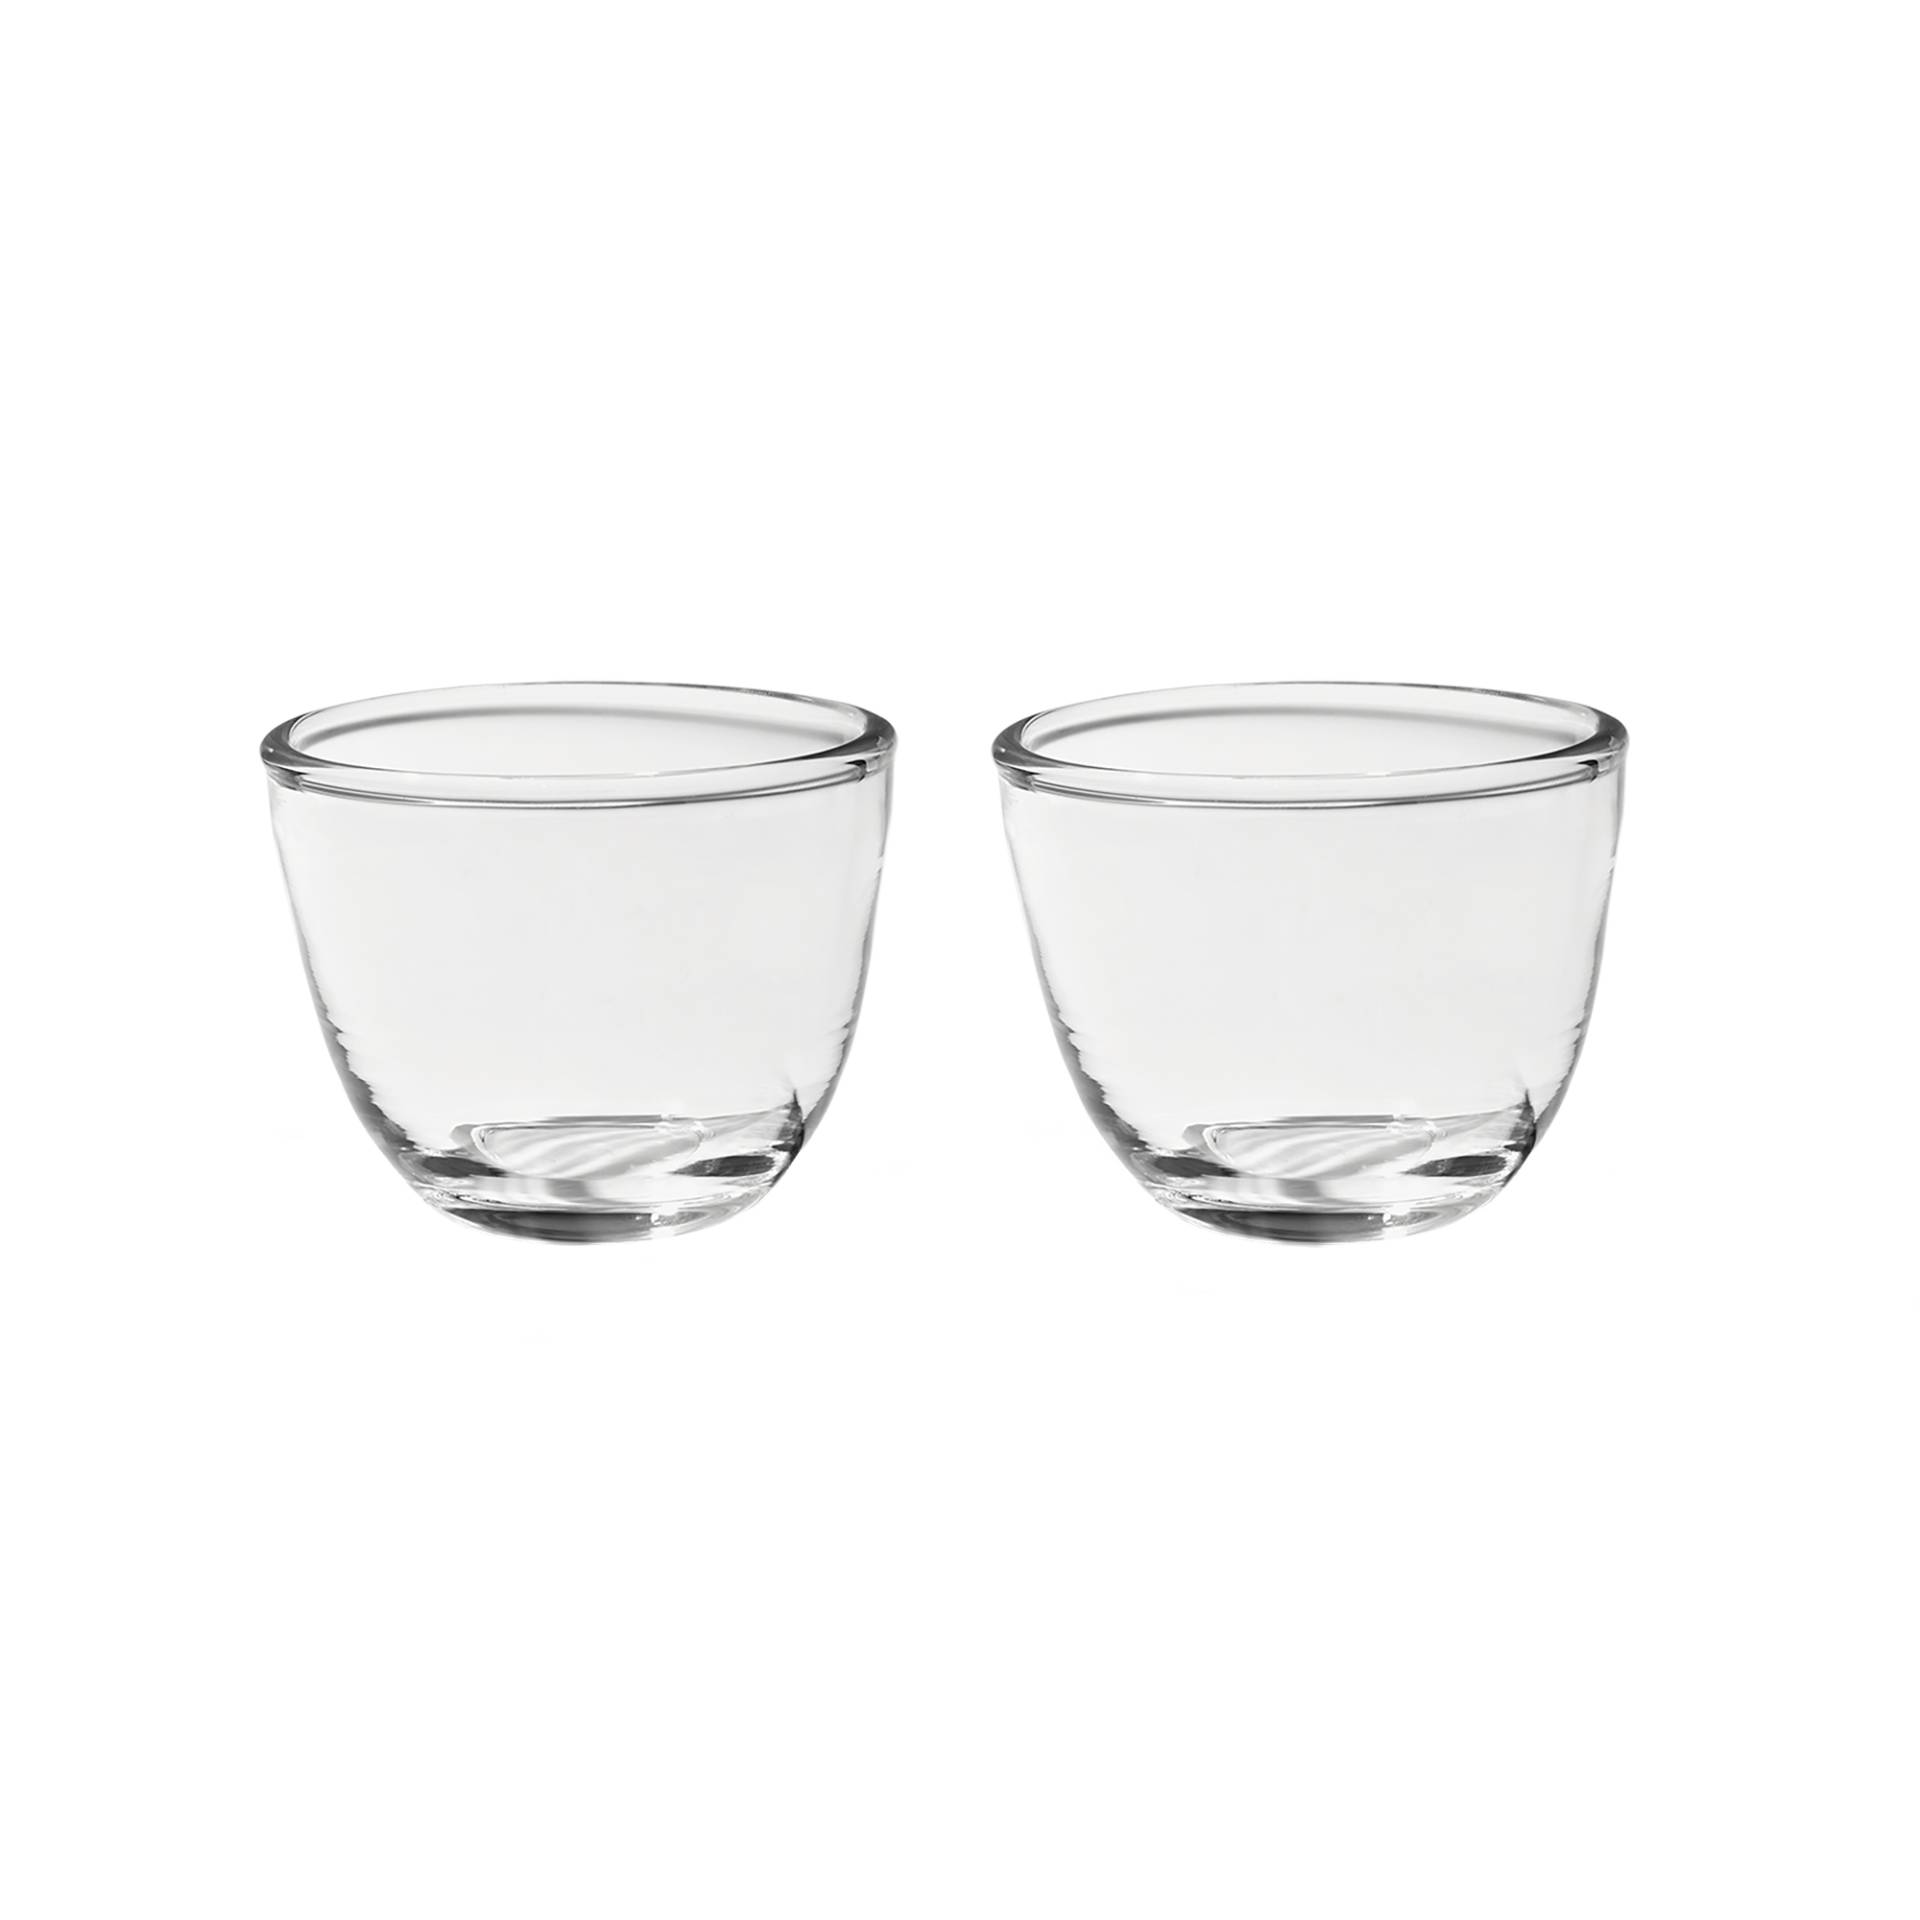 Form & Refine - Pinho Trinkglas 2er Set - klar/H x Ø 6,5x8,5cm/20cl/jedes Stück ein Unikat von Form & Refine